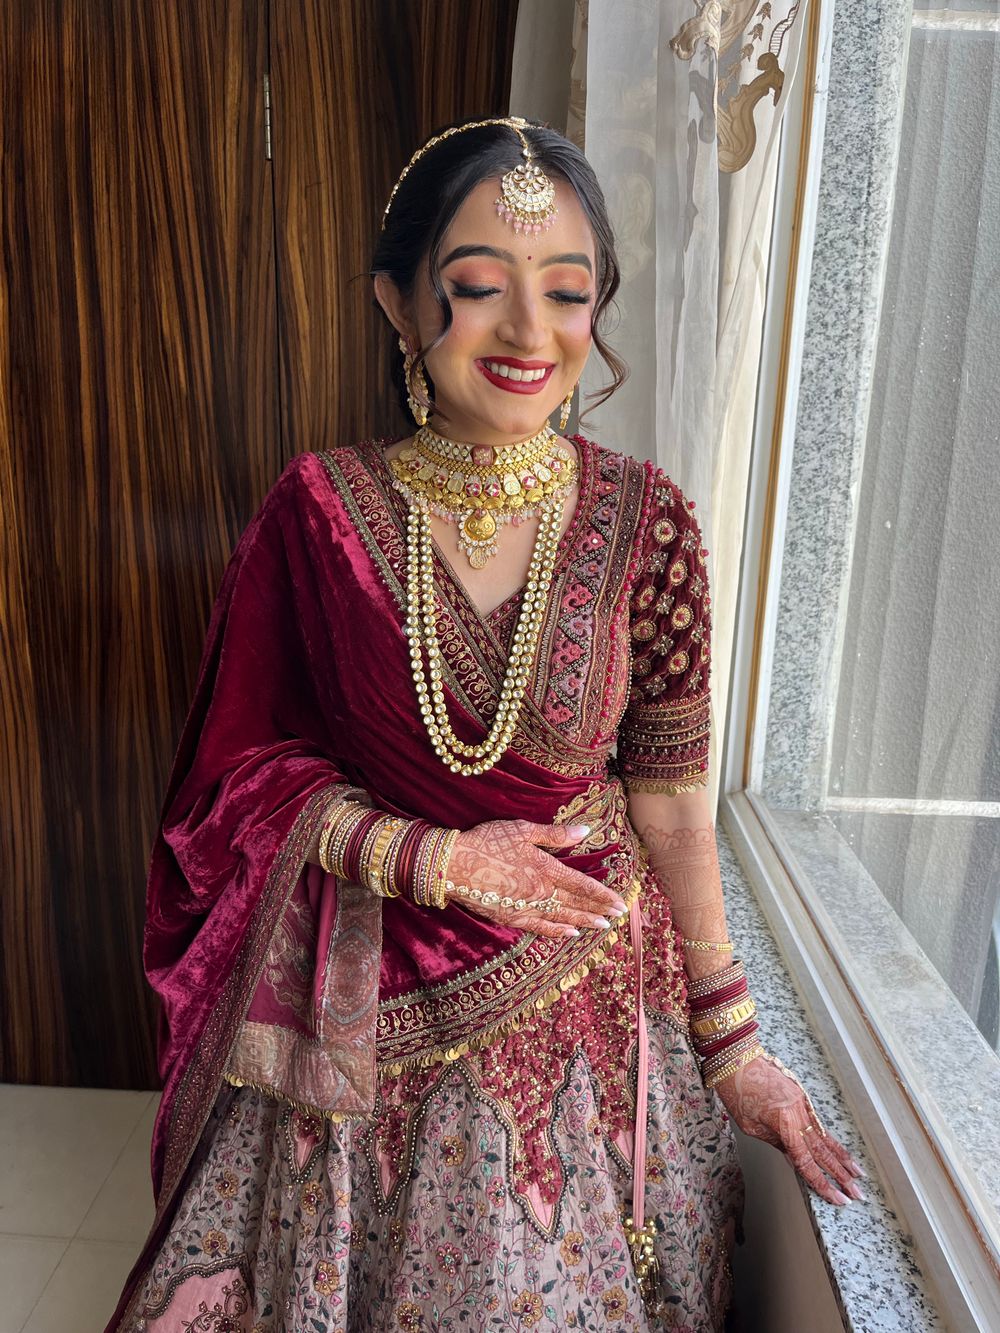 Photo By Sheetal S Tripathi - Bridal Makeup